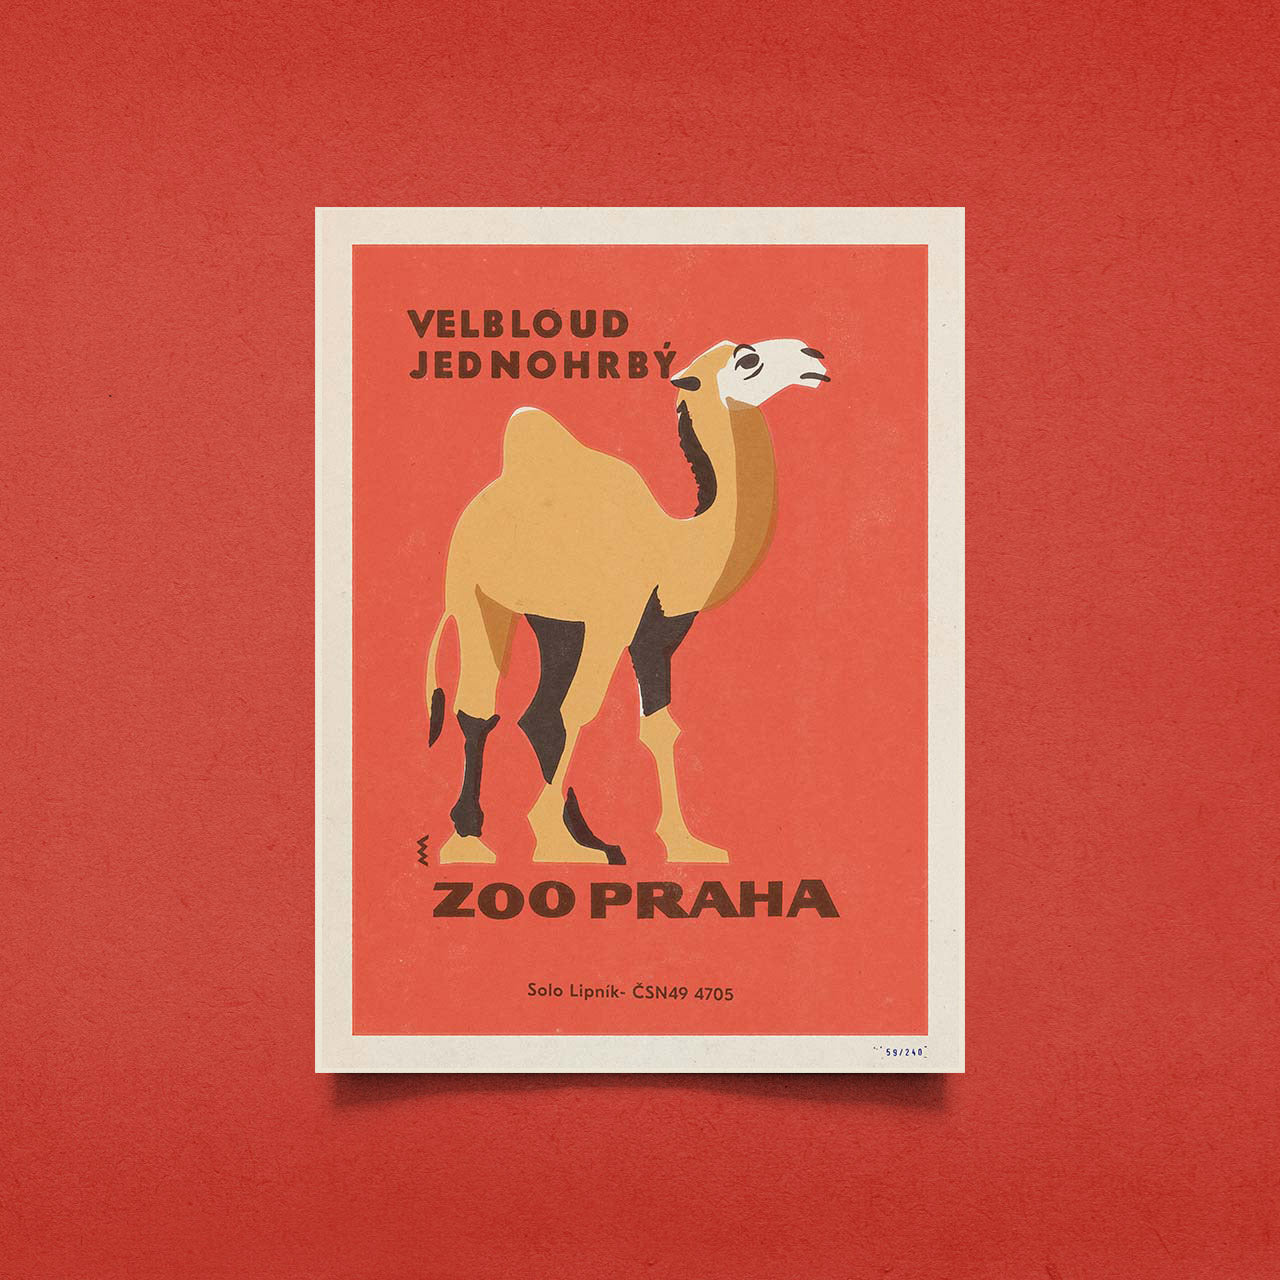 Zoo Praha - Velbloud jednohrbý - Plakát 30x40 cm